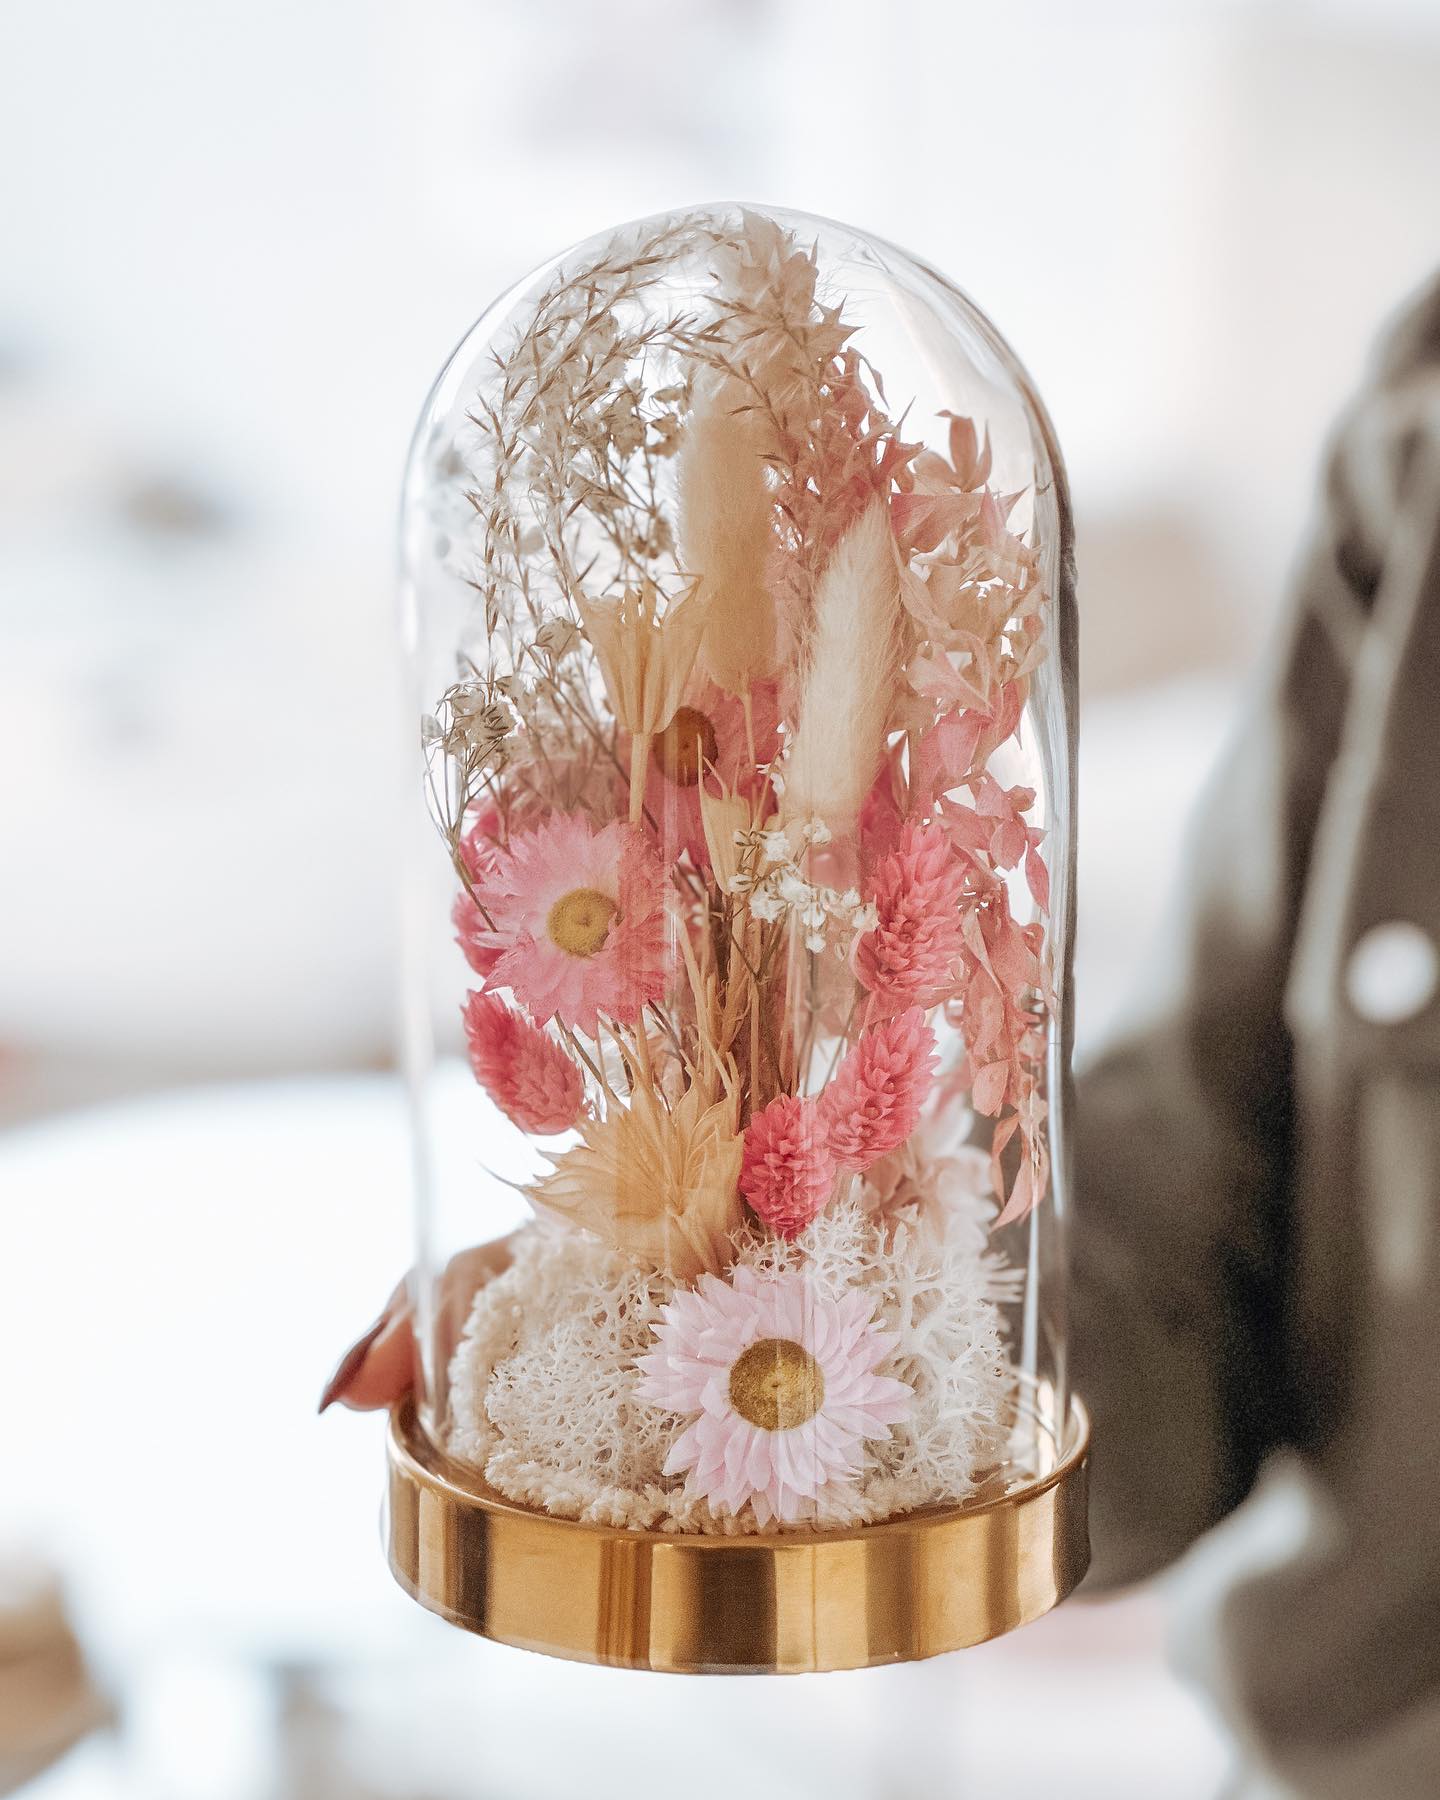 Szklana kopuła z suszem róż (PREMIUM) zdjęcie 1